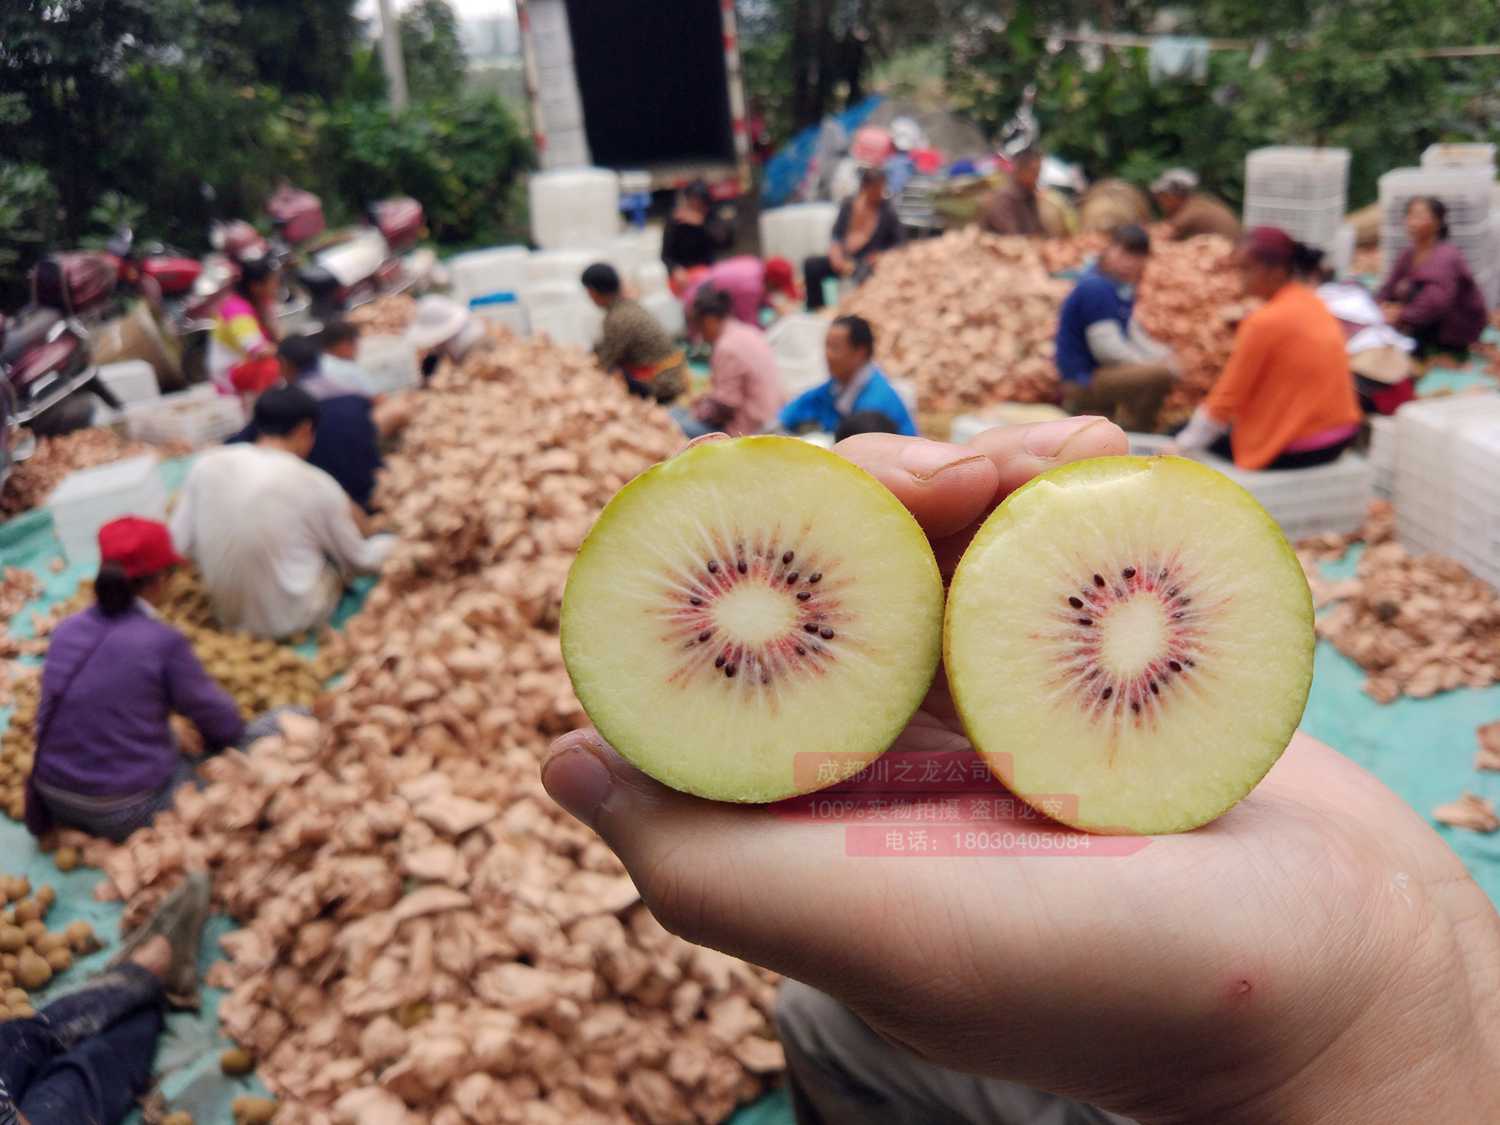 介绍贵州当地东红猕猴桃产量长期在低水平所以价格高